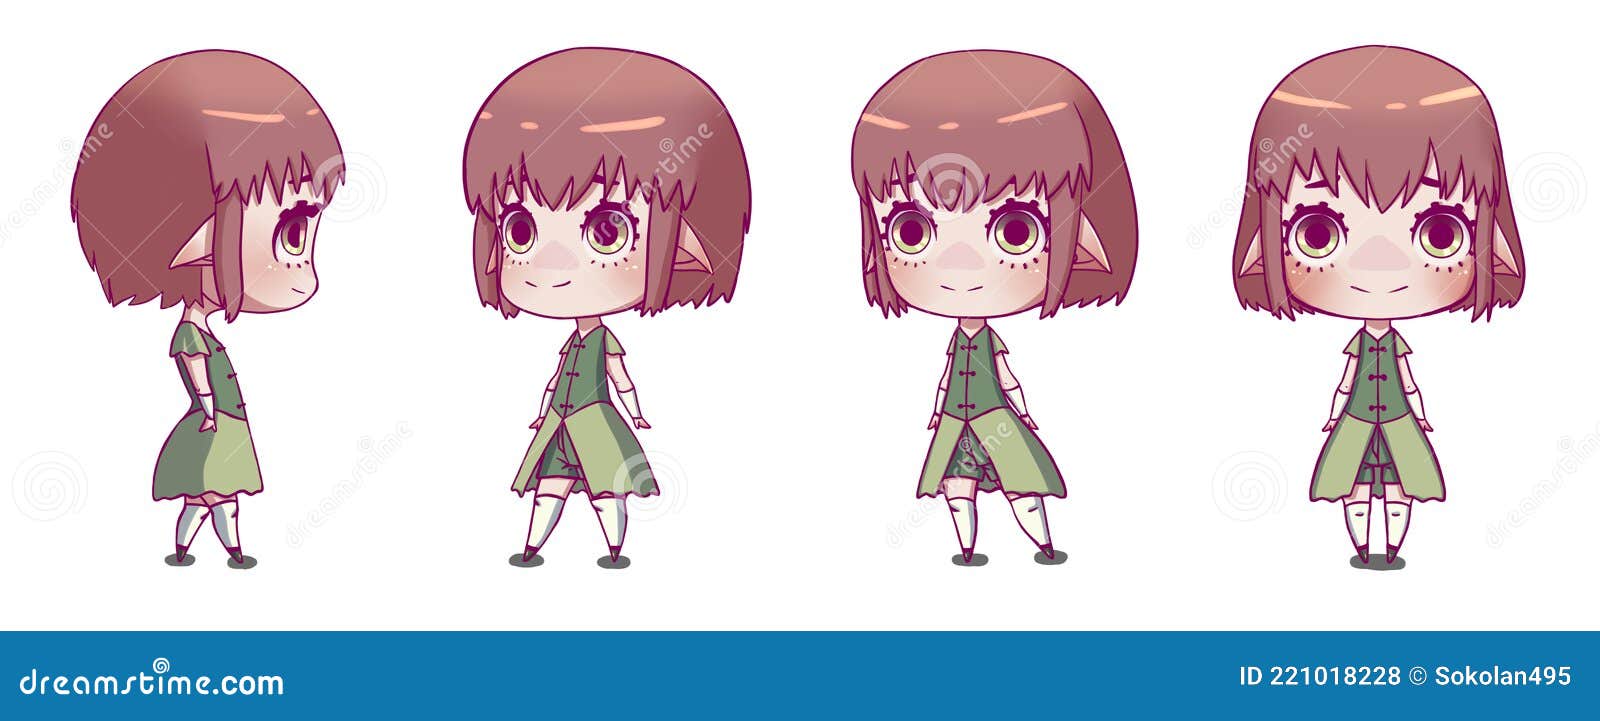 Personagem de anime com diferentes poses de uma mulher com uma